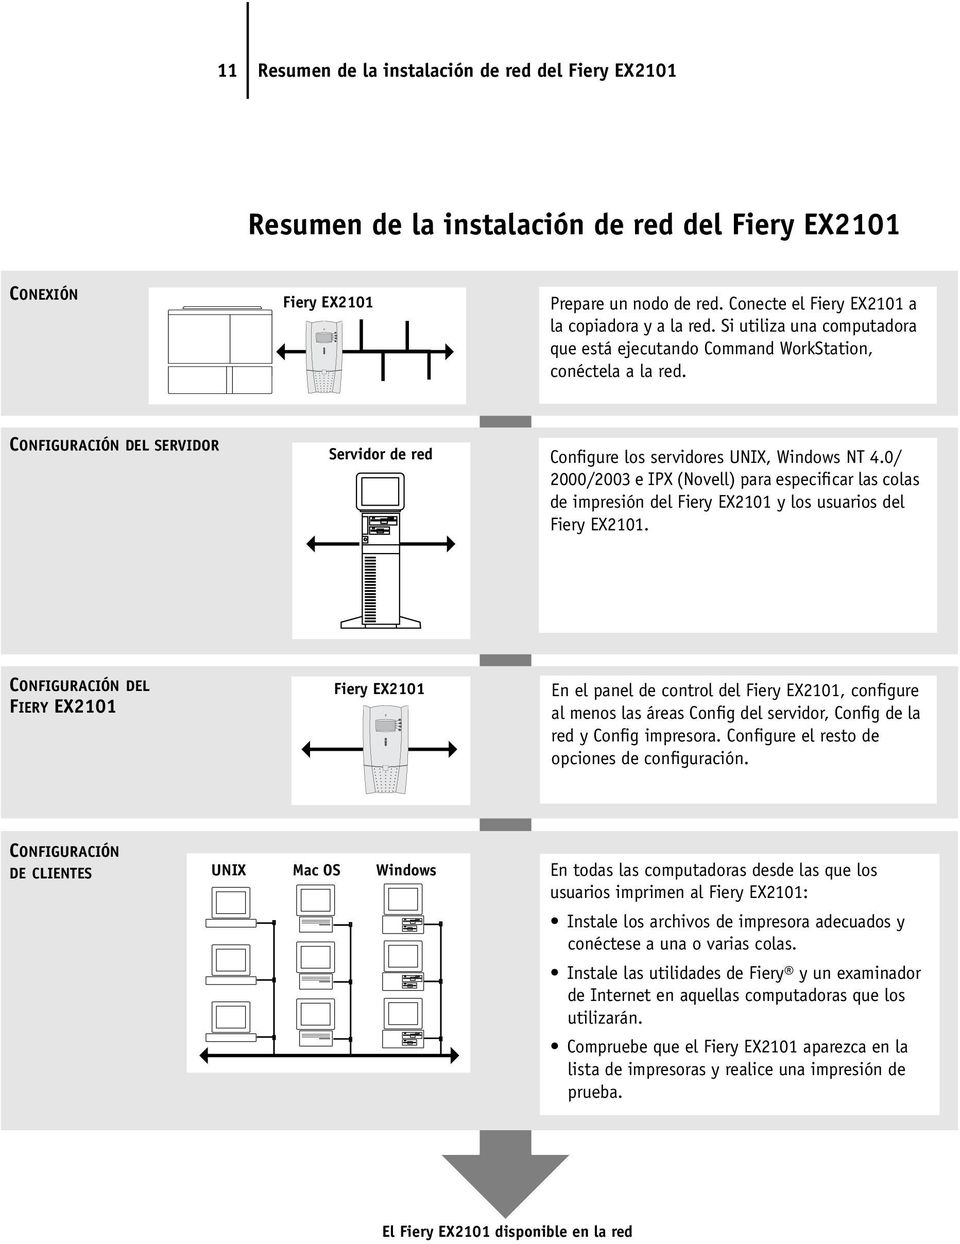 0/ 2000/2003 e IPX (Novell) para especificar las colas de impresión del Fiery EX2101 y los usuarios del Fiery EX2101.